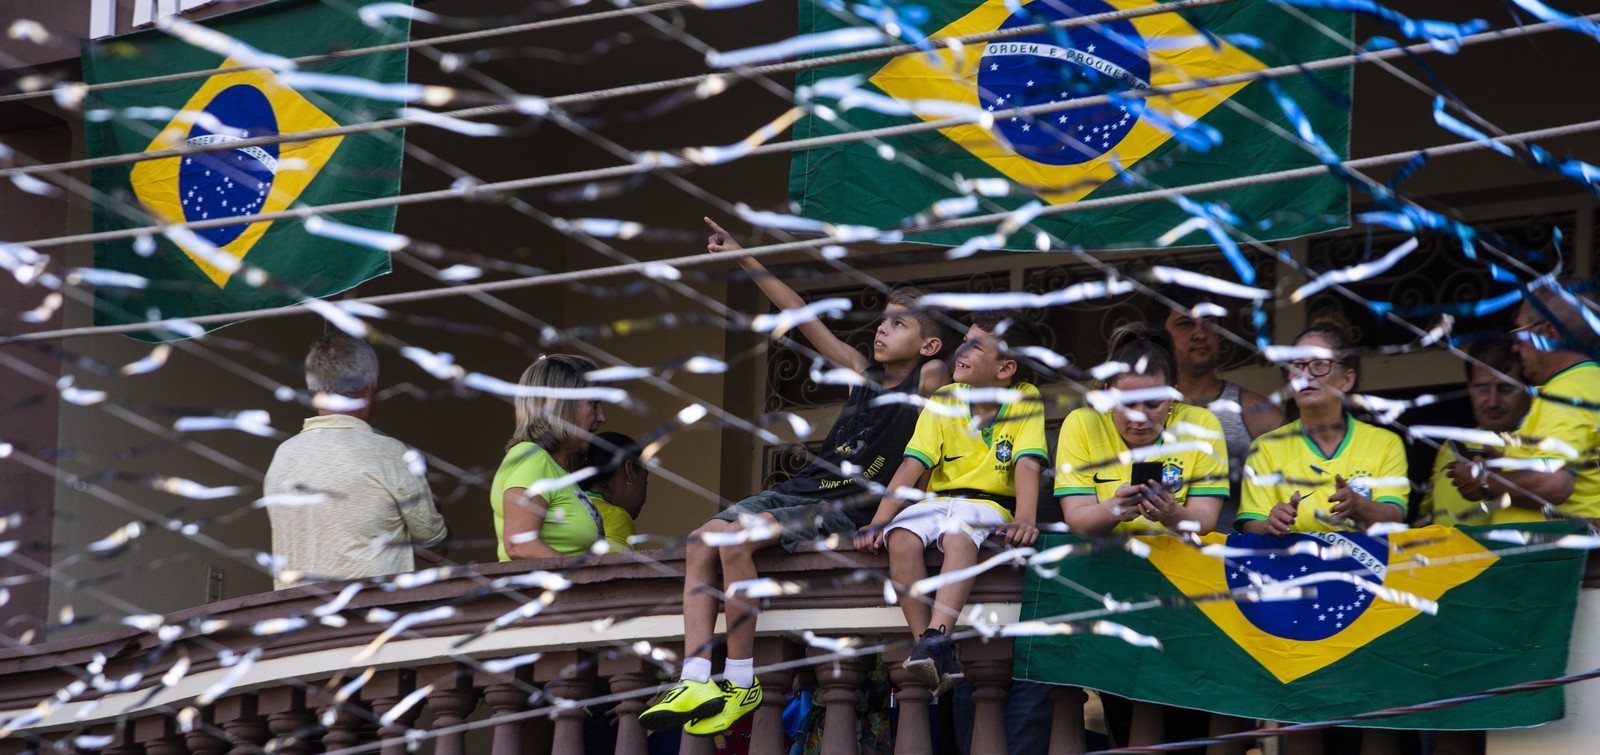 Apoiadores usam símbolos nacionais para apoiar o presidente Bolsonaro — Foto: Maria Isabel Oliveira/Agência O Globo